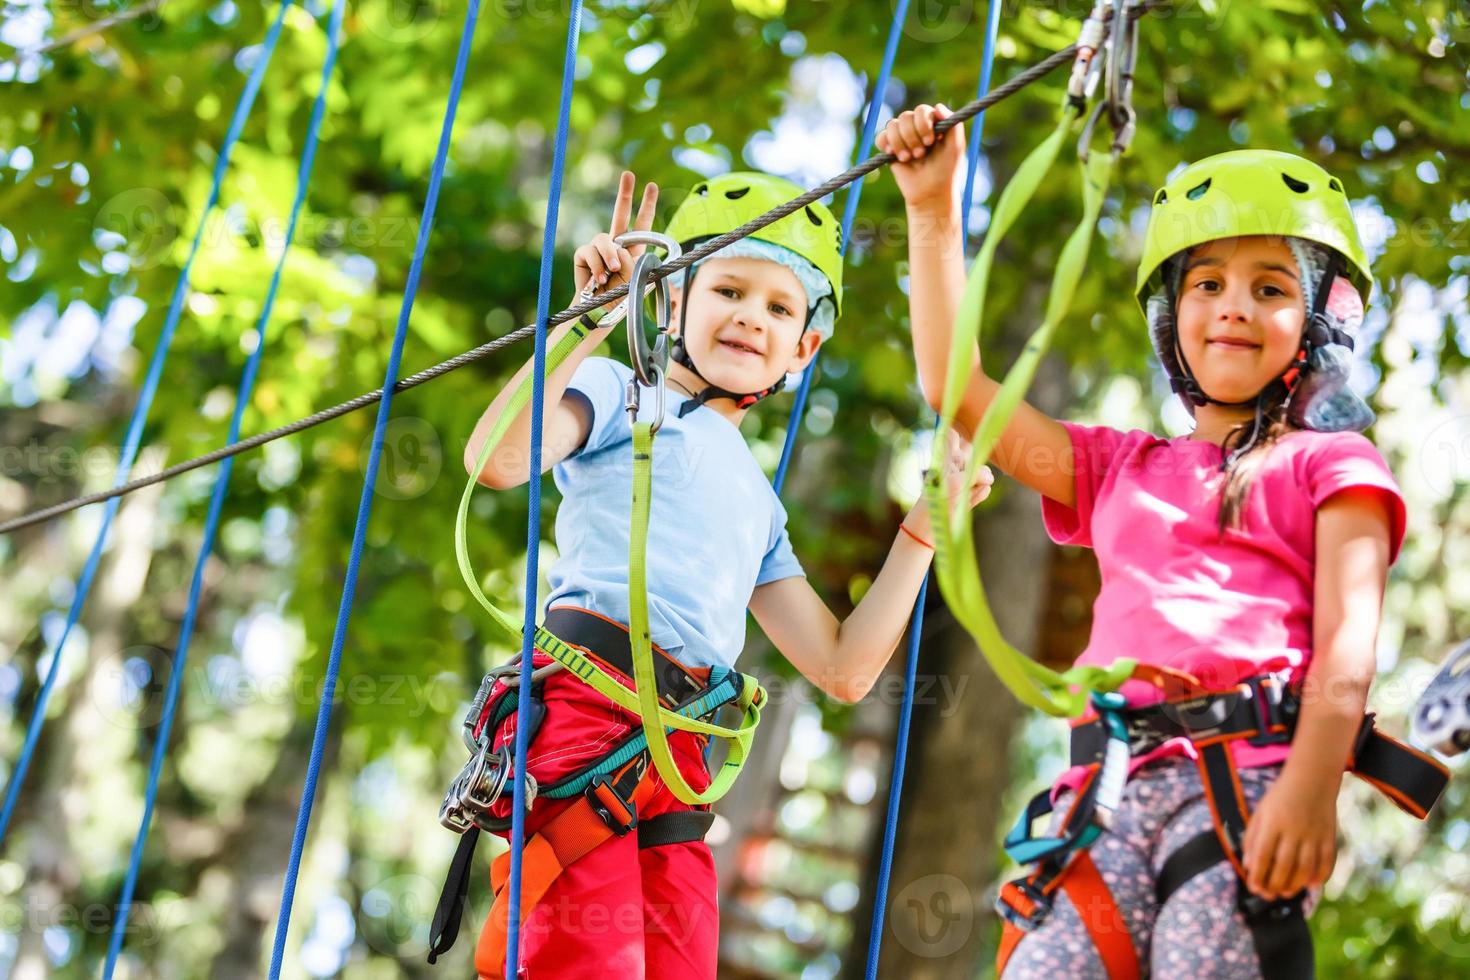 parque de cuerdas de escalada de aventura - niños en el parque de cuerdas del curso en casco de montaña y equipo de seguridad foto